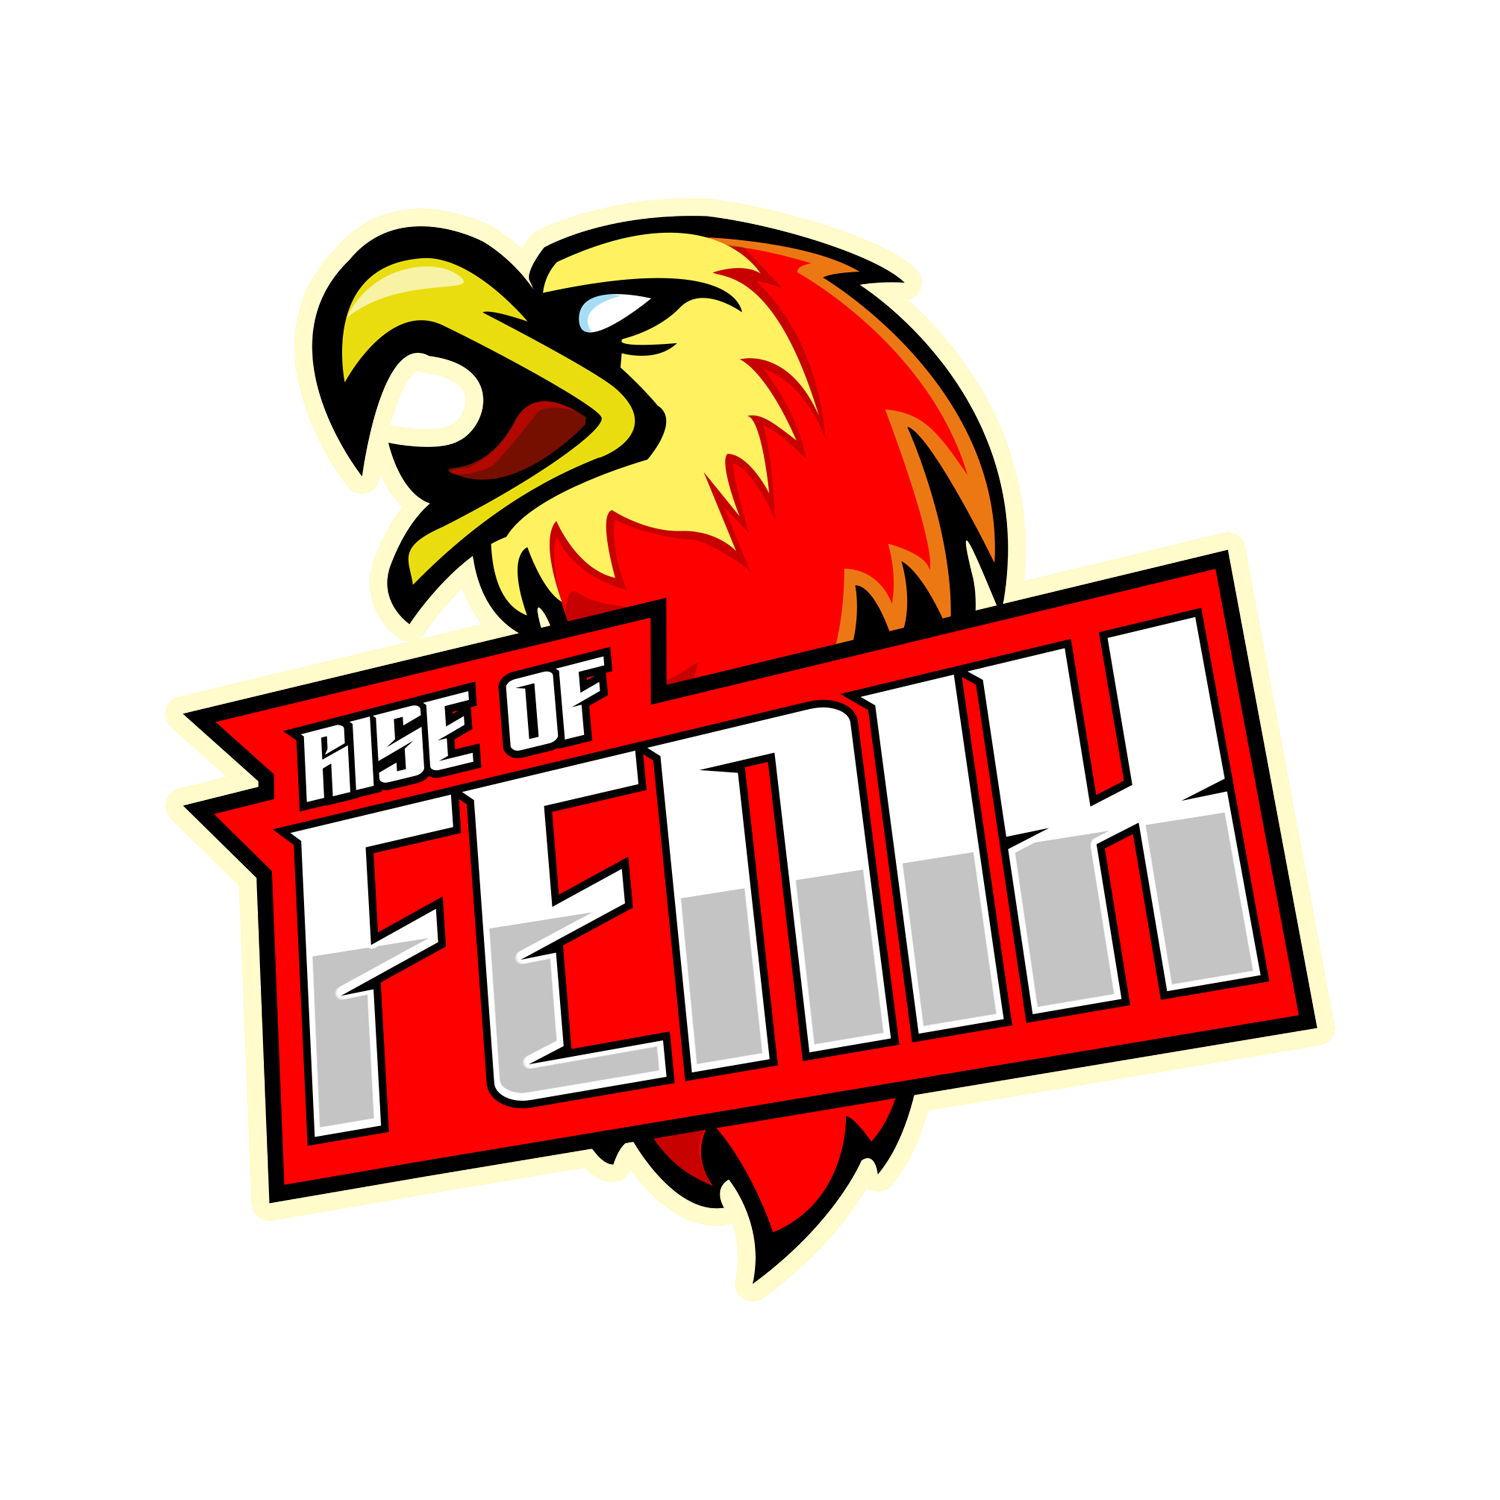 Rise of Fenix